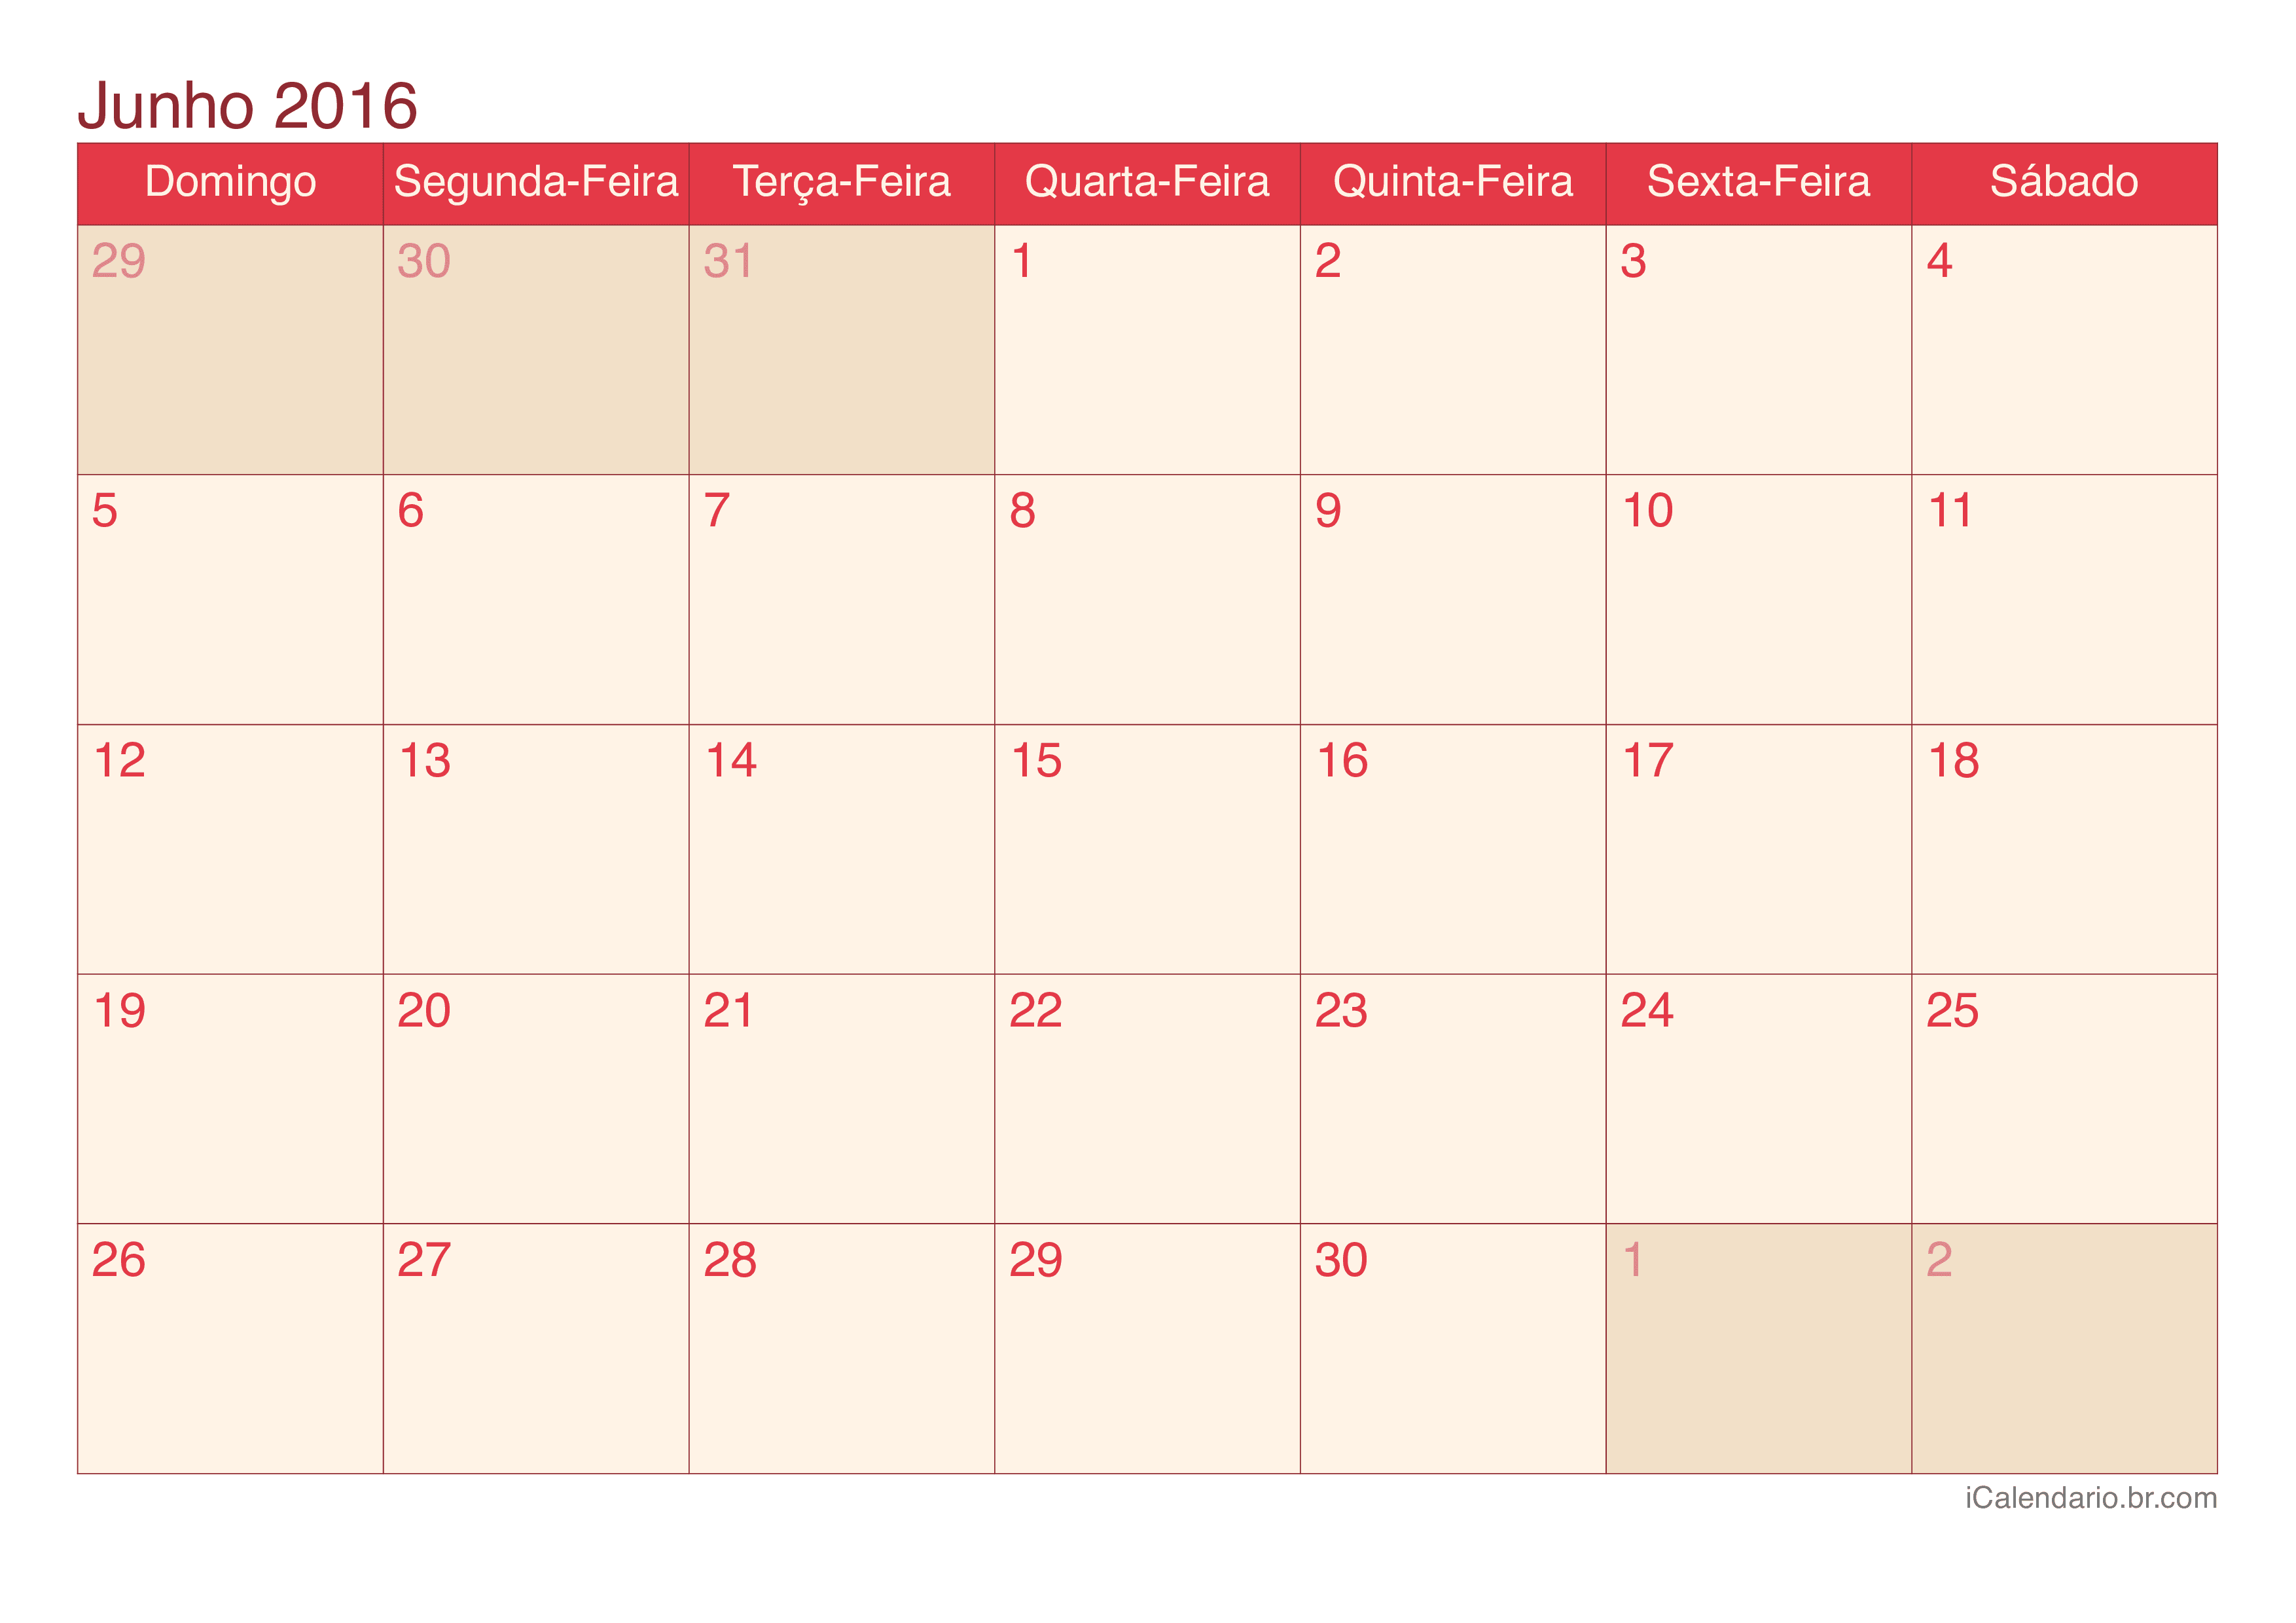 Calendário de junho 2016 - Cherry